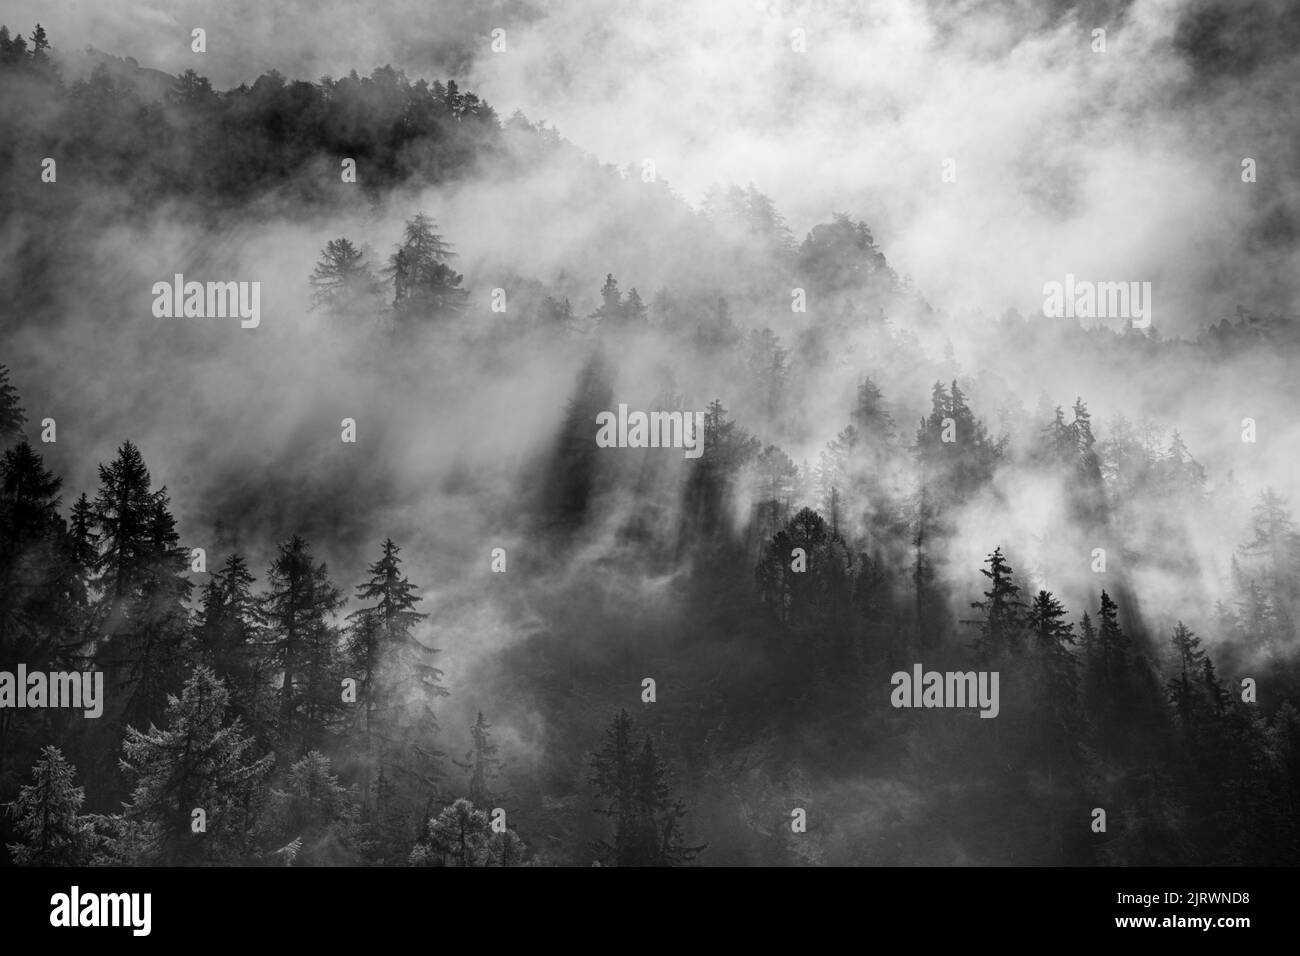 la luce del sole splende attraverso la nebbia che sovrasta una collina boschiva coperta di pini. Ombre bianche e nere Foto Stock